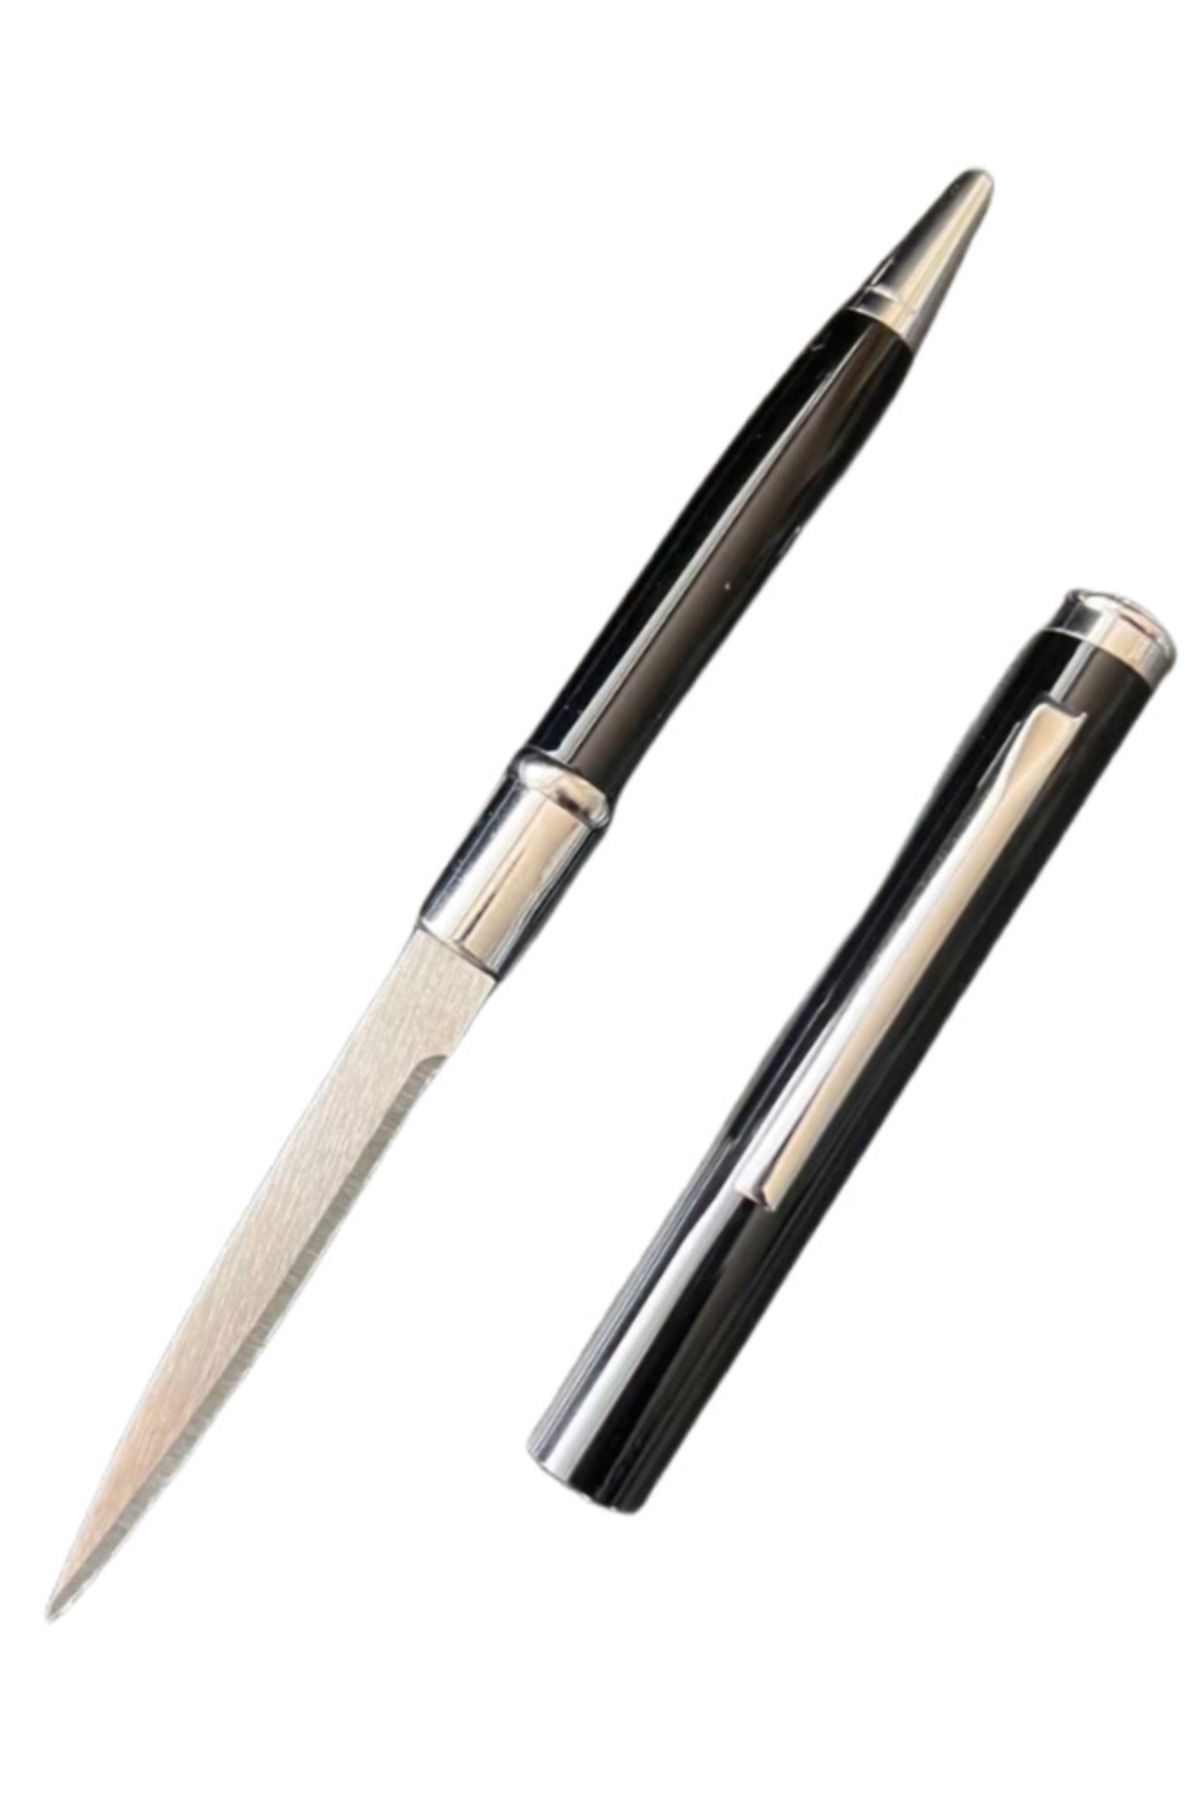 KnivesAndWeapons Kalem Bıçak Gizli Bıçak Kalem Görünümlü Siyah Lüks Kalem Standart Kalem Boyutu Taktikal